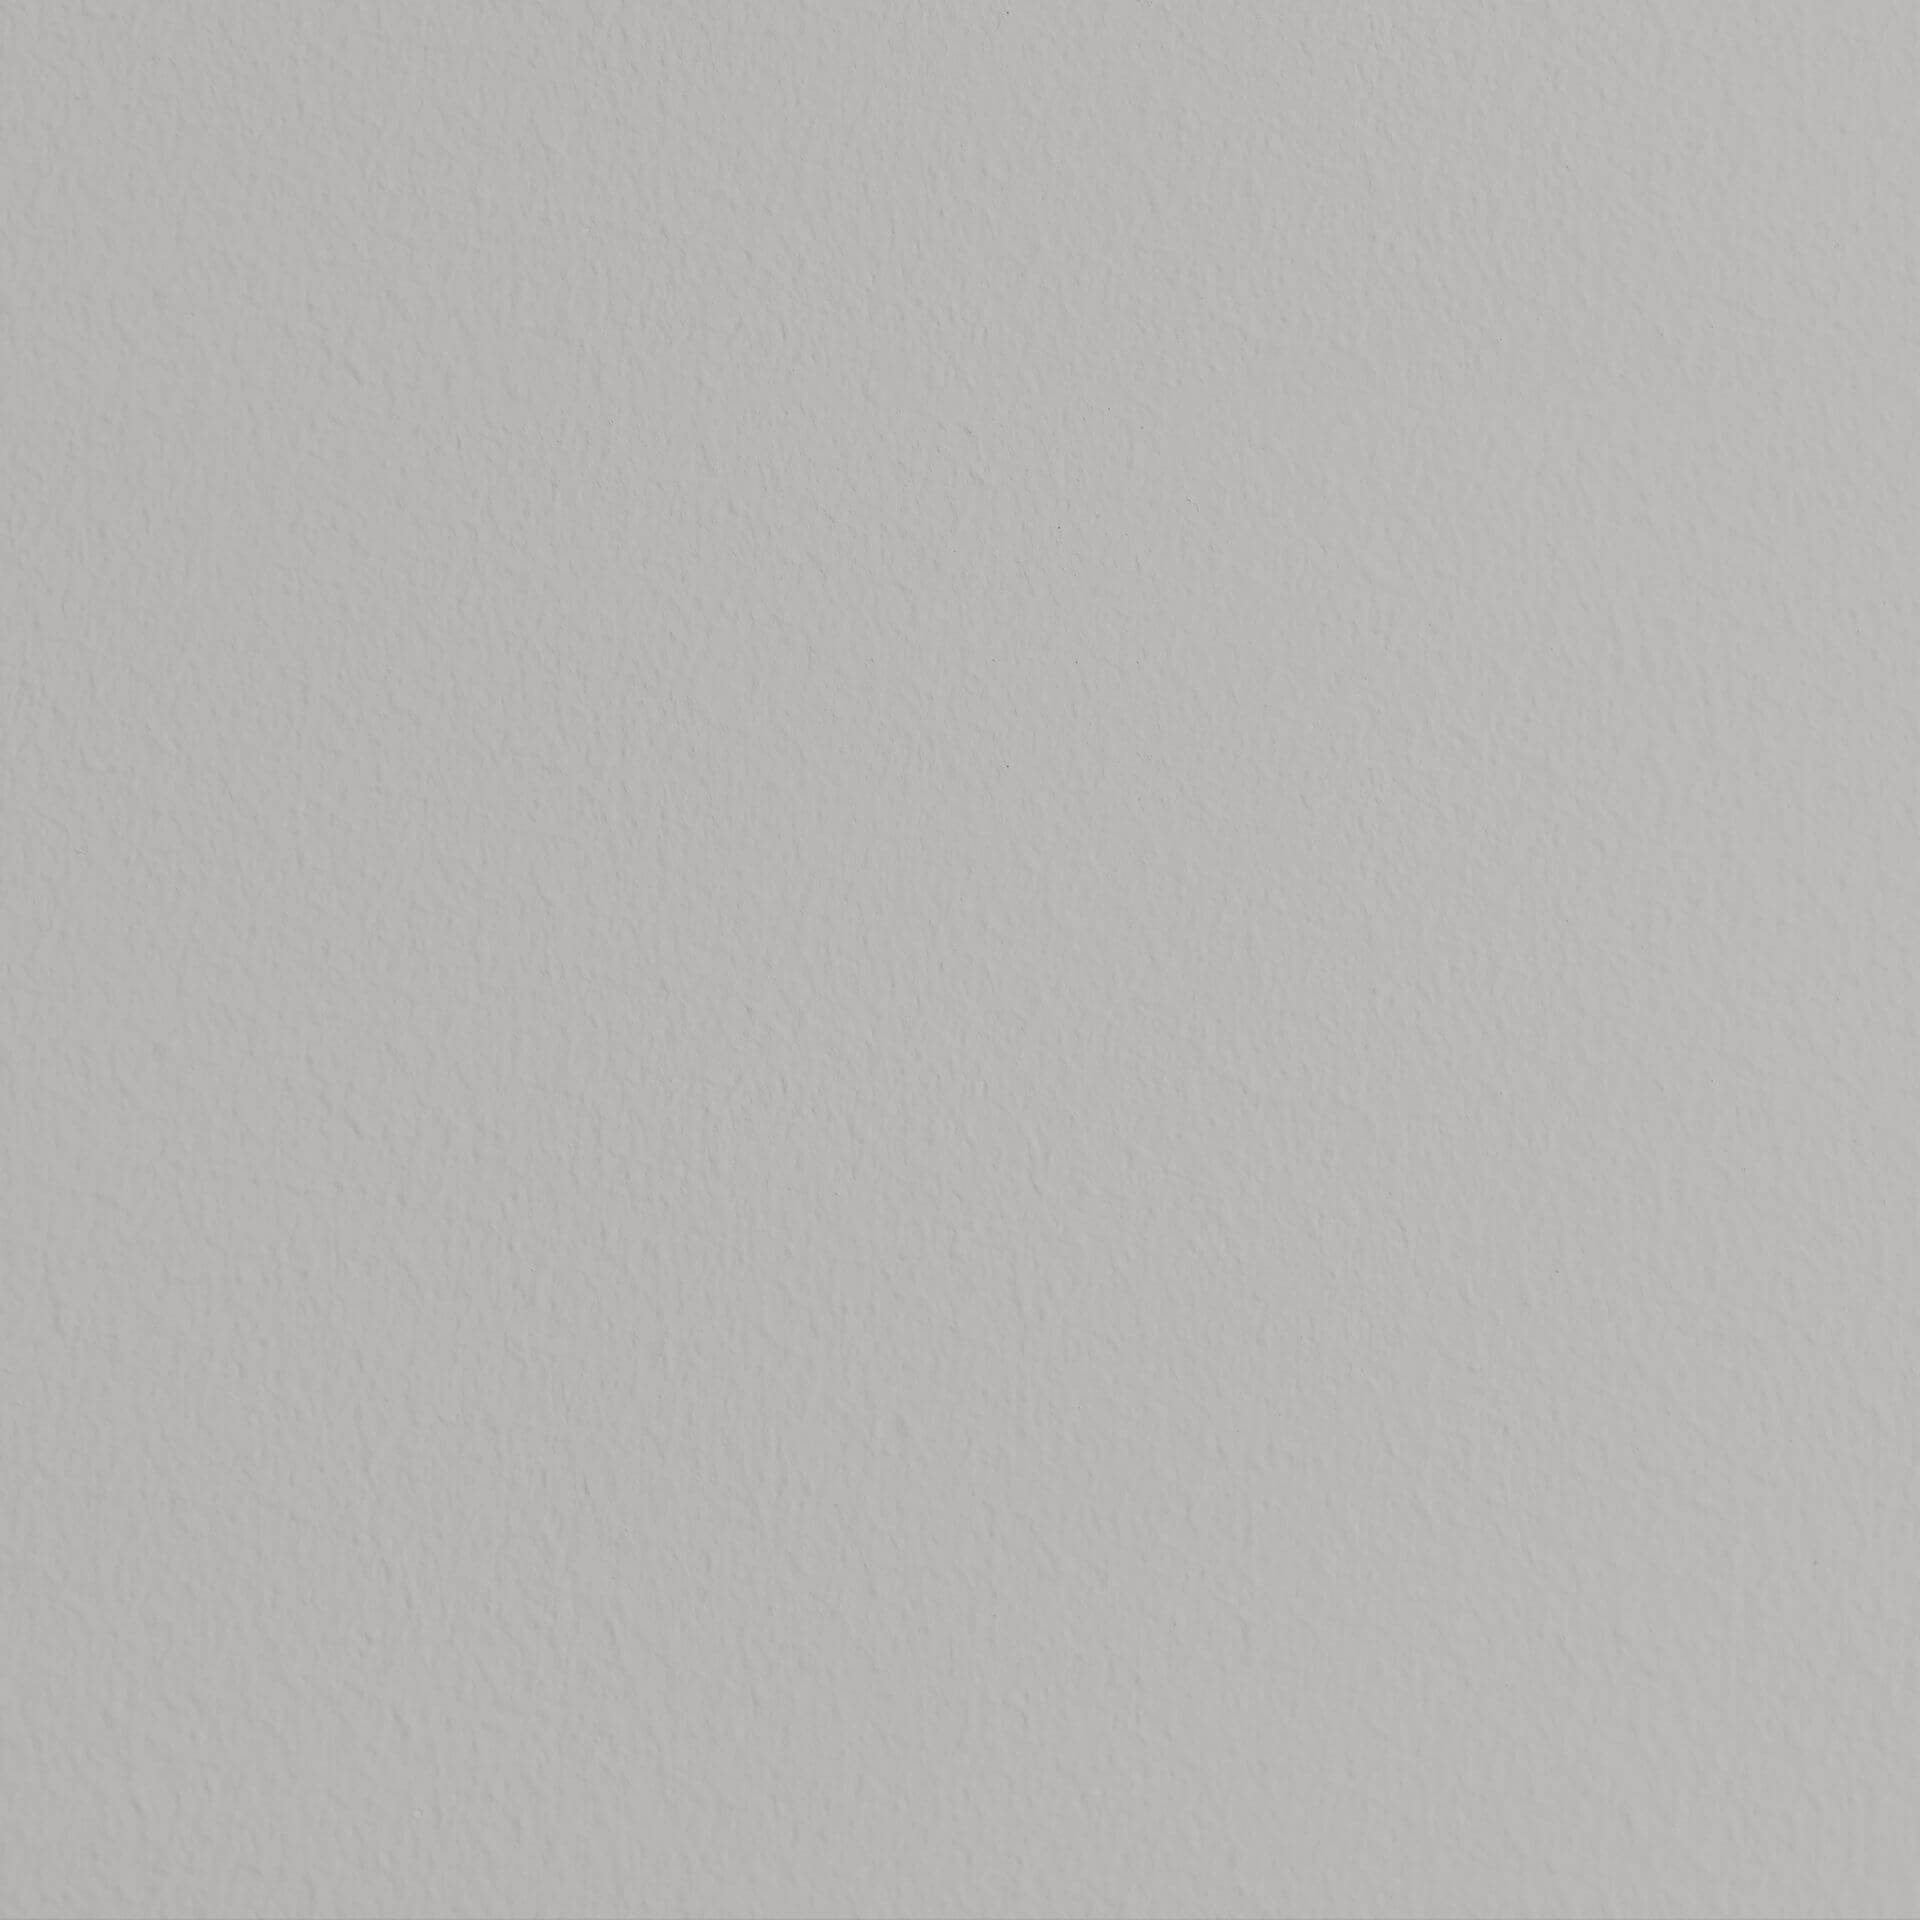 Mylands Grey Ochre No. 152 - Marble Matt Emulsion / Wandfarbe, 2.5L